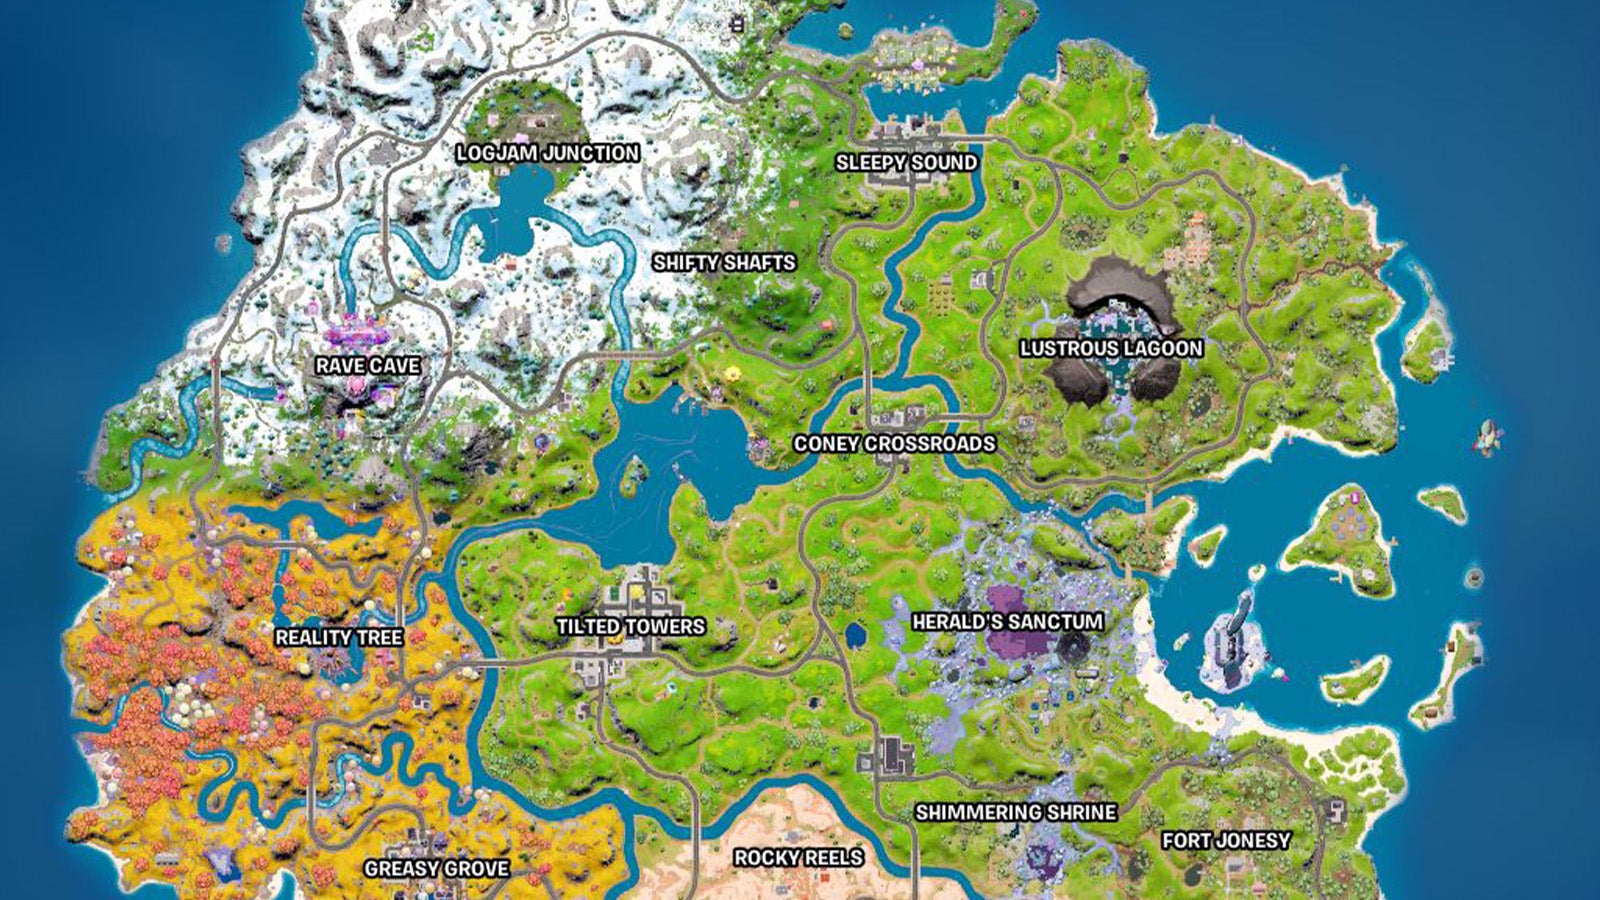 Fortnite New Map Landmarks And Named Locations Explained Eurogamer Net